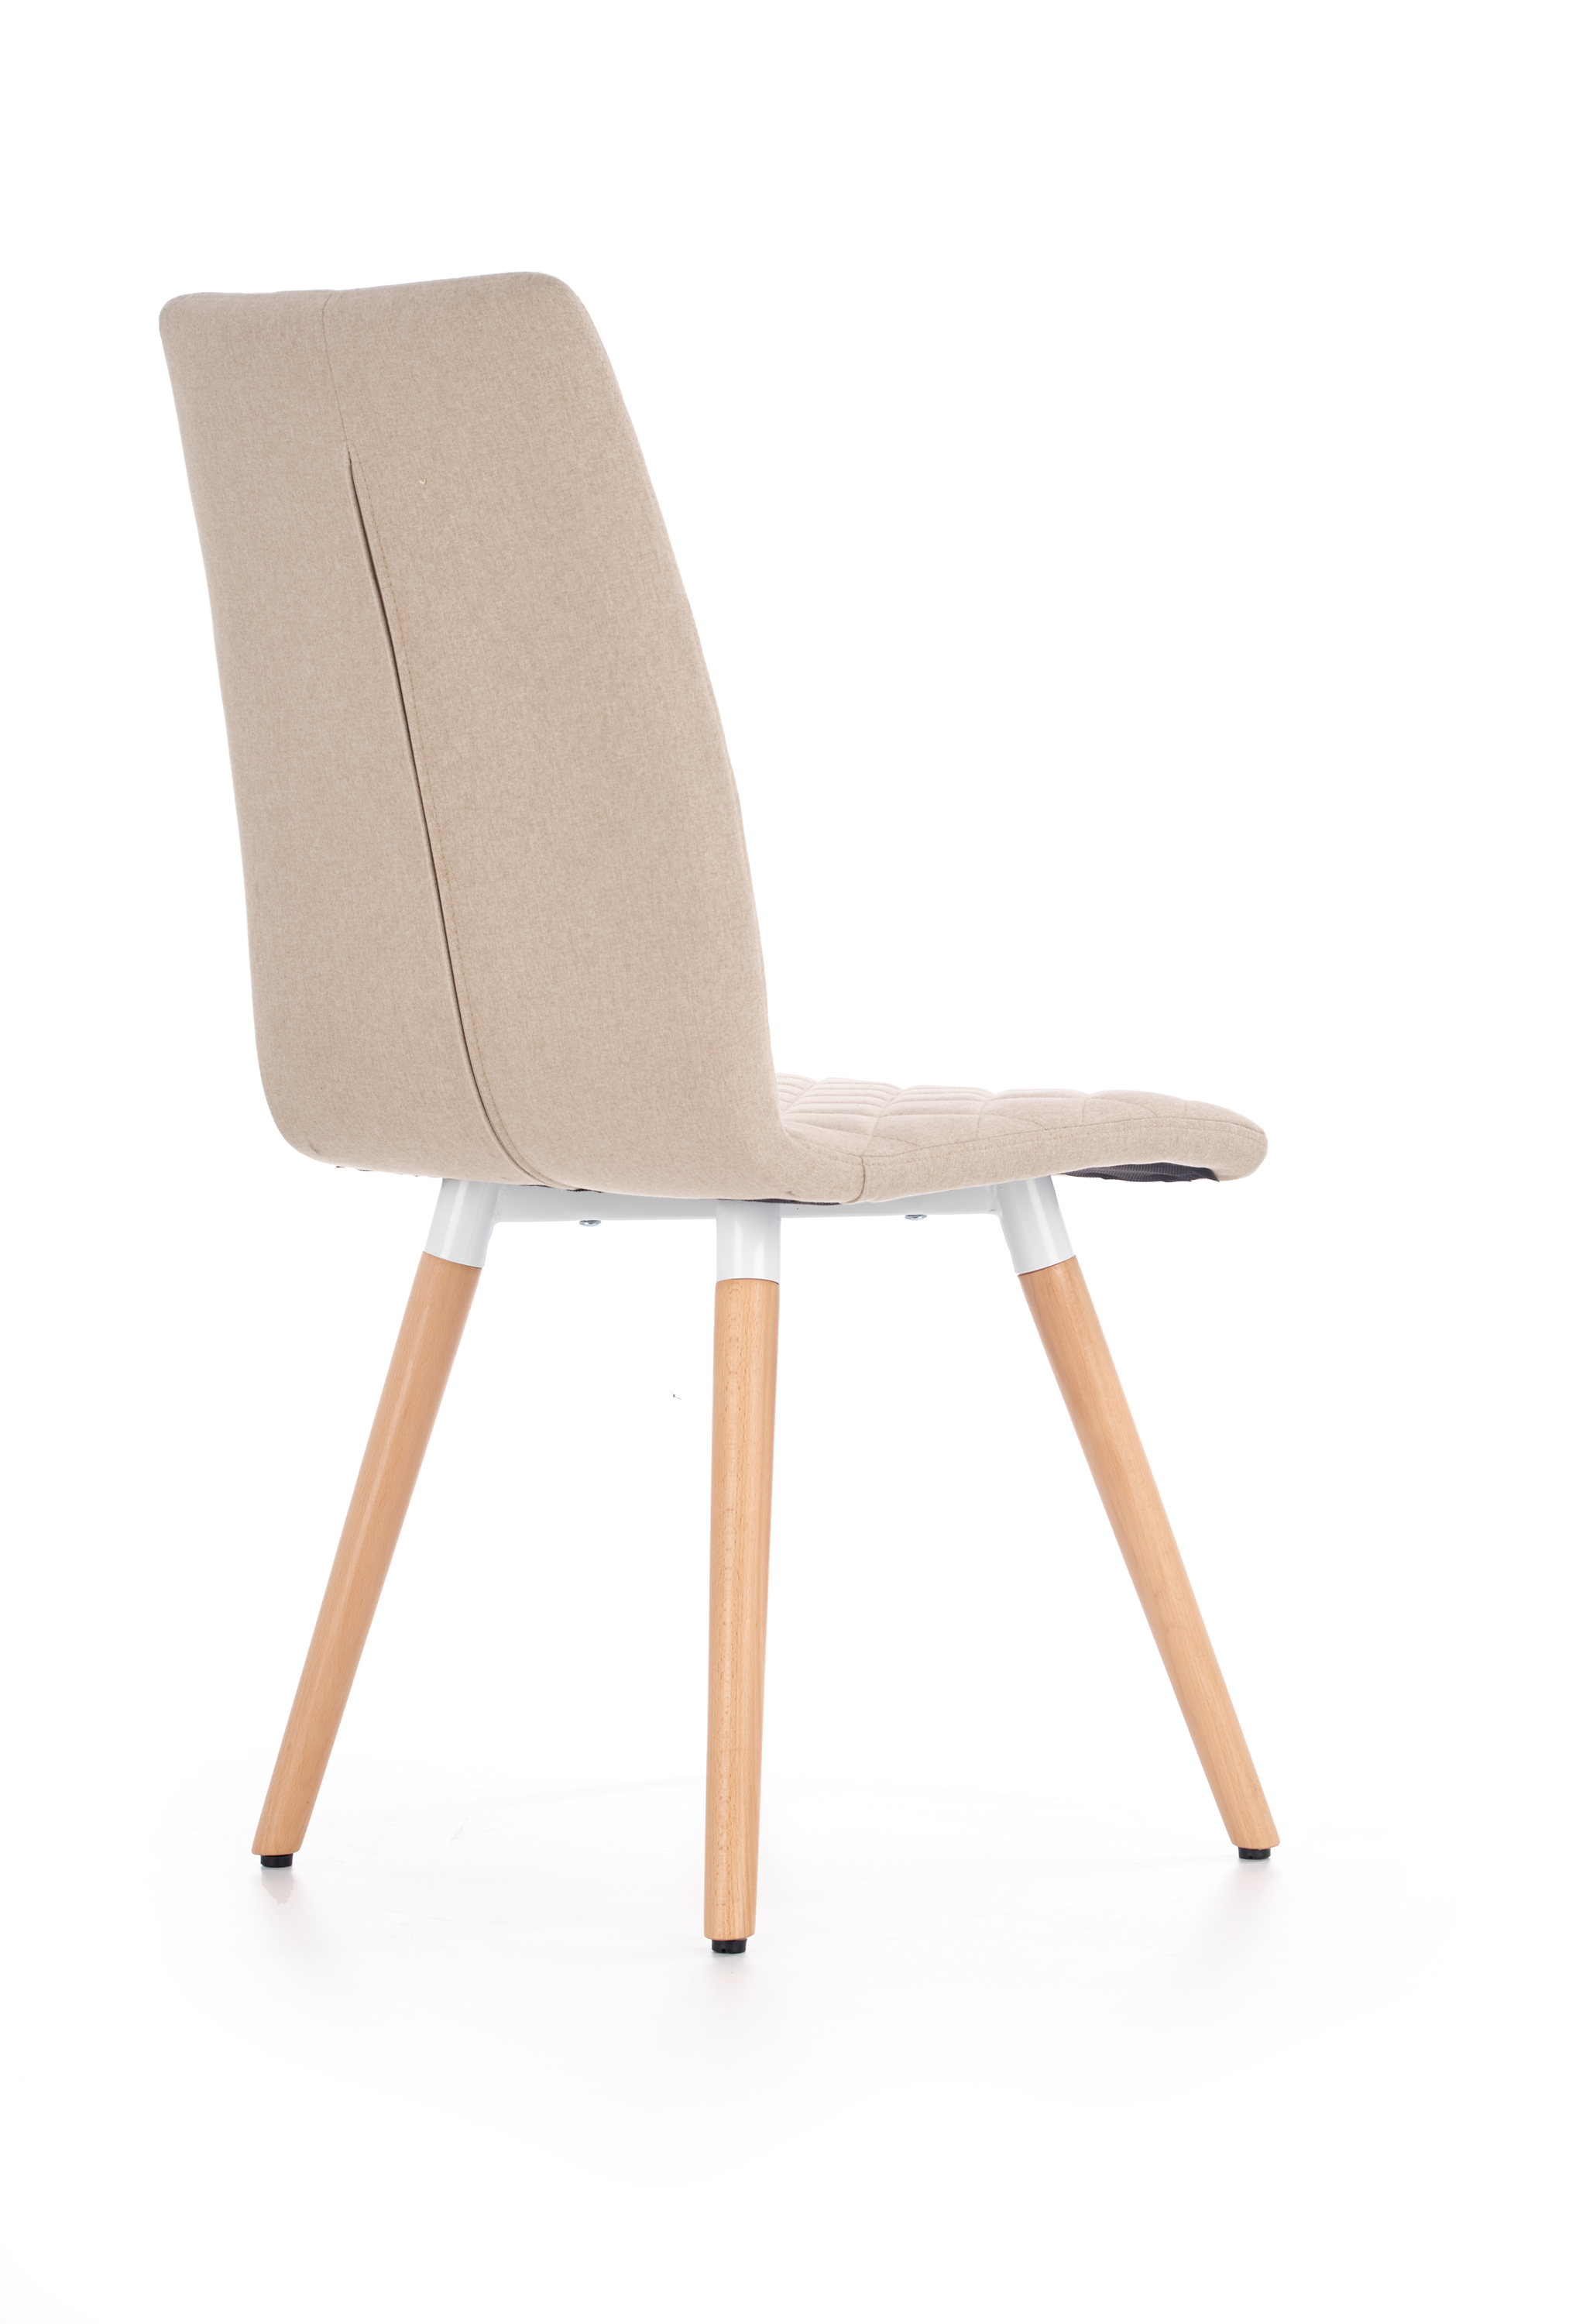 Židle K282 - béžová Židle k282 - béžová